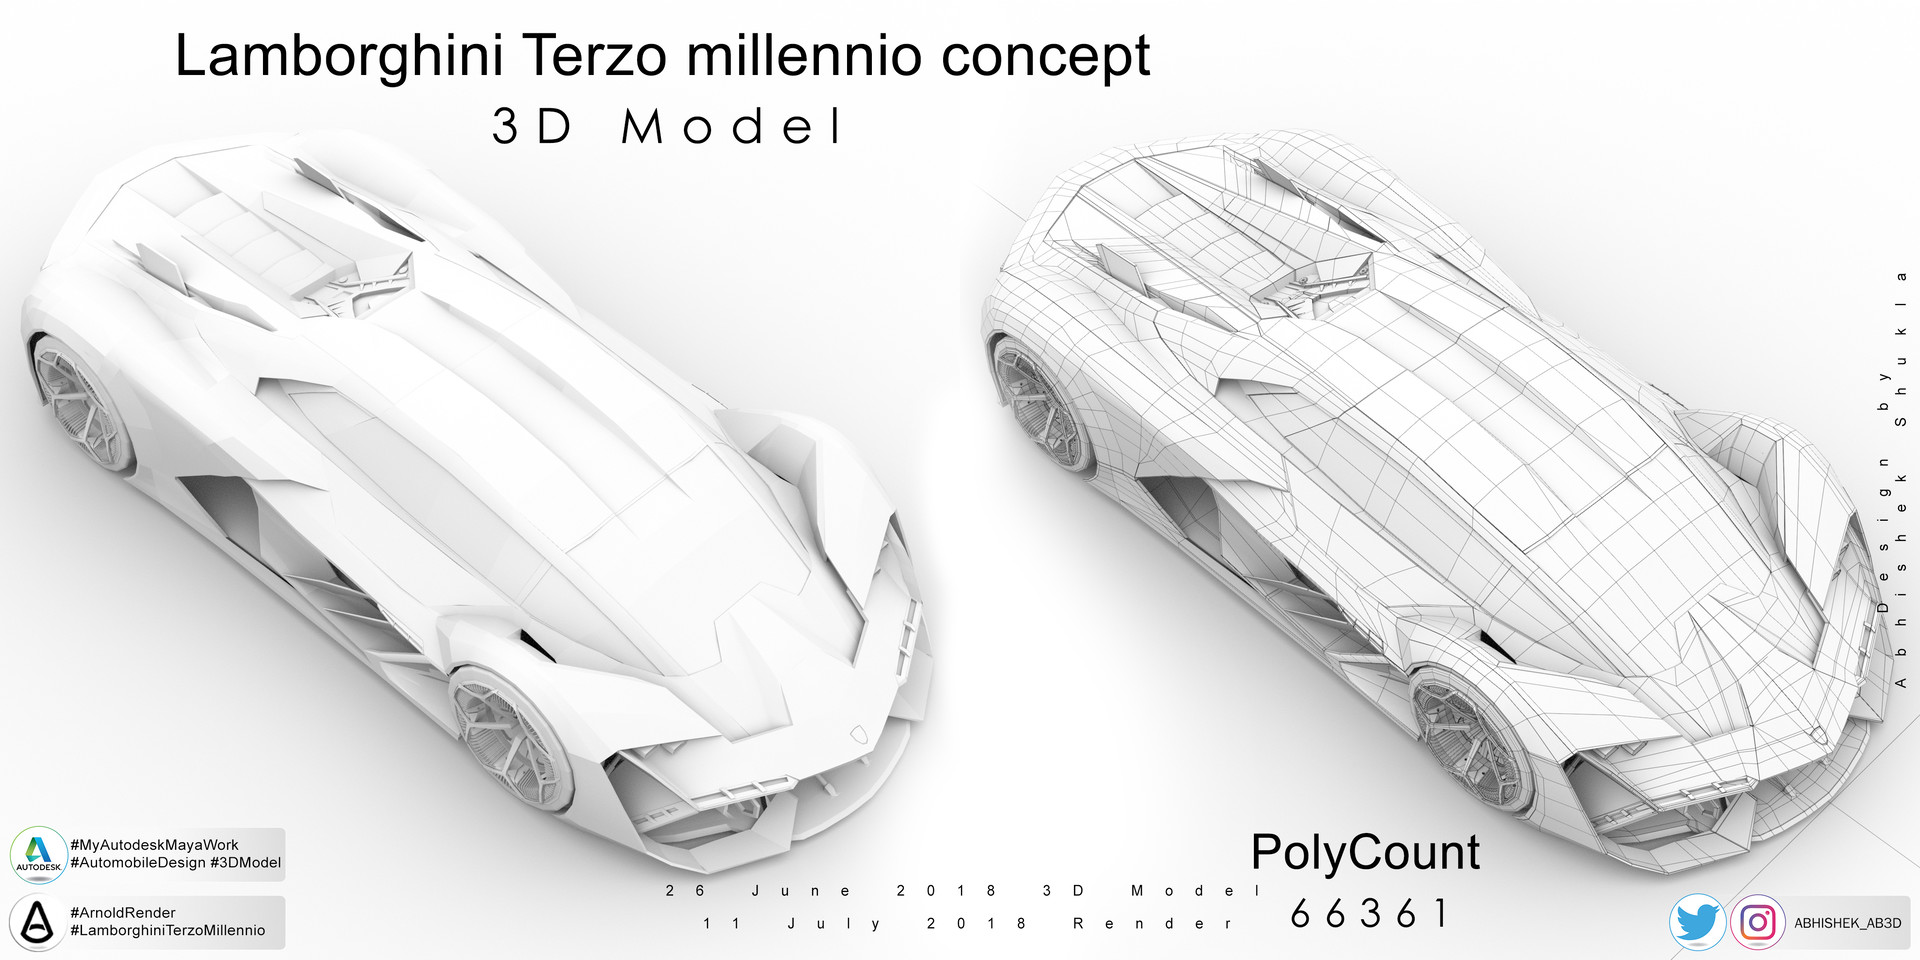 Lamborghini Terzo Millennio designs, themes, templates and